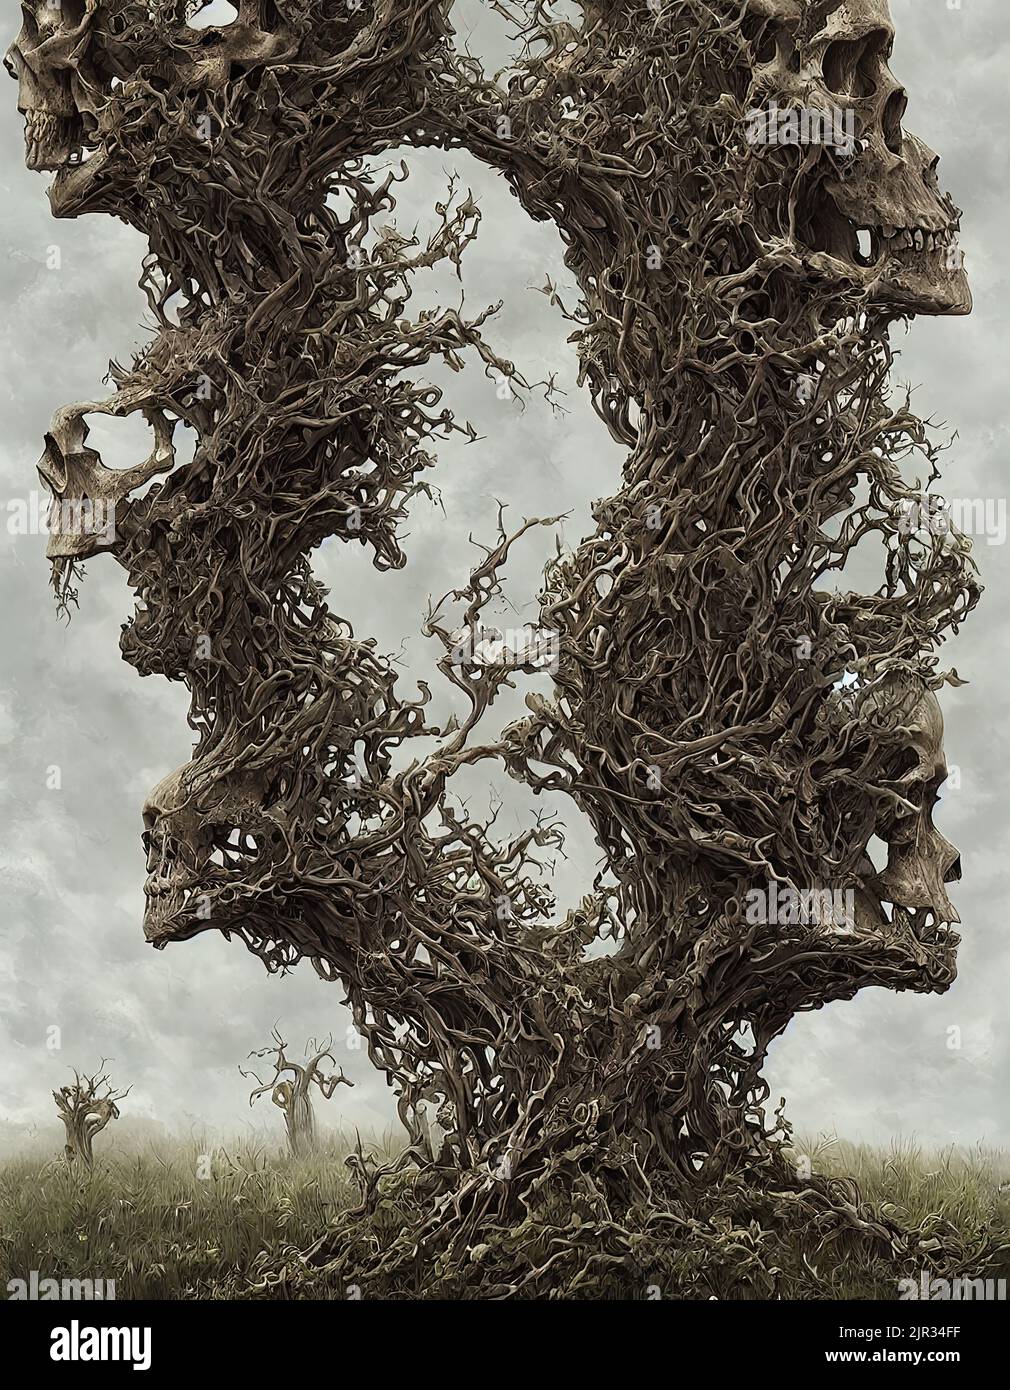 representación en 3d de un árbol de cráneo humano de fantasía aterradora con miembros enrarecidos Foto de stock